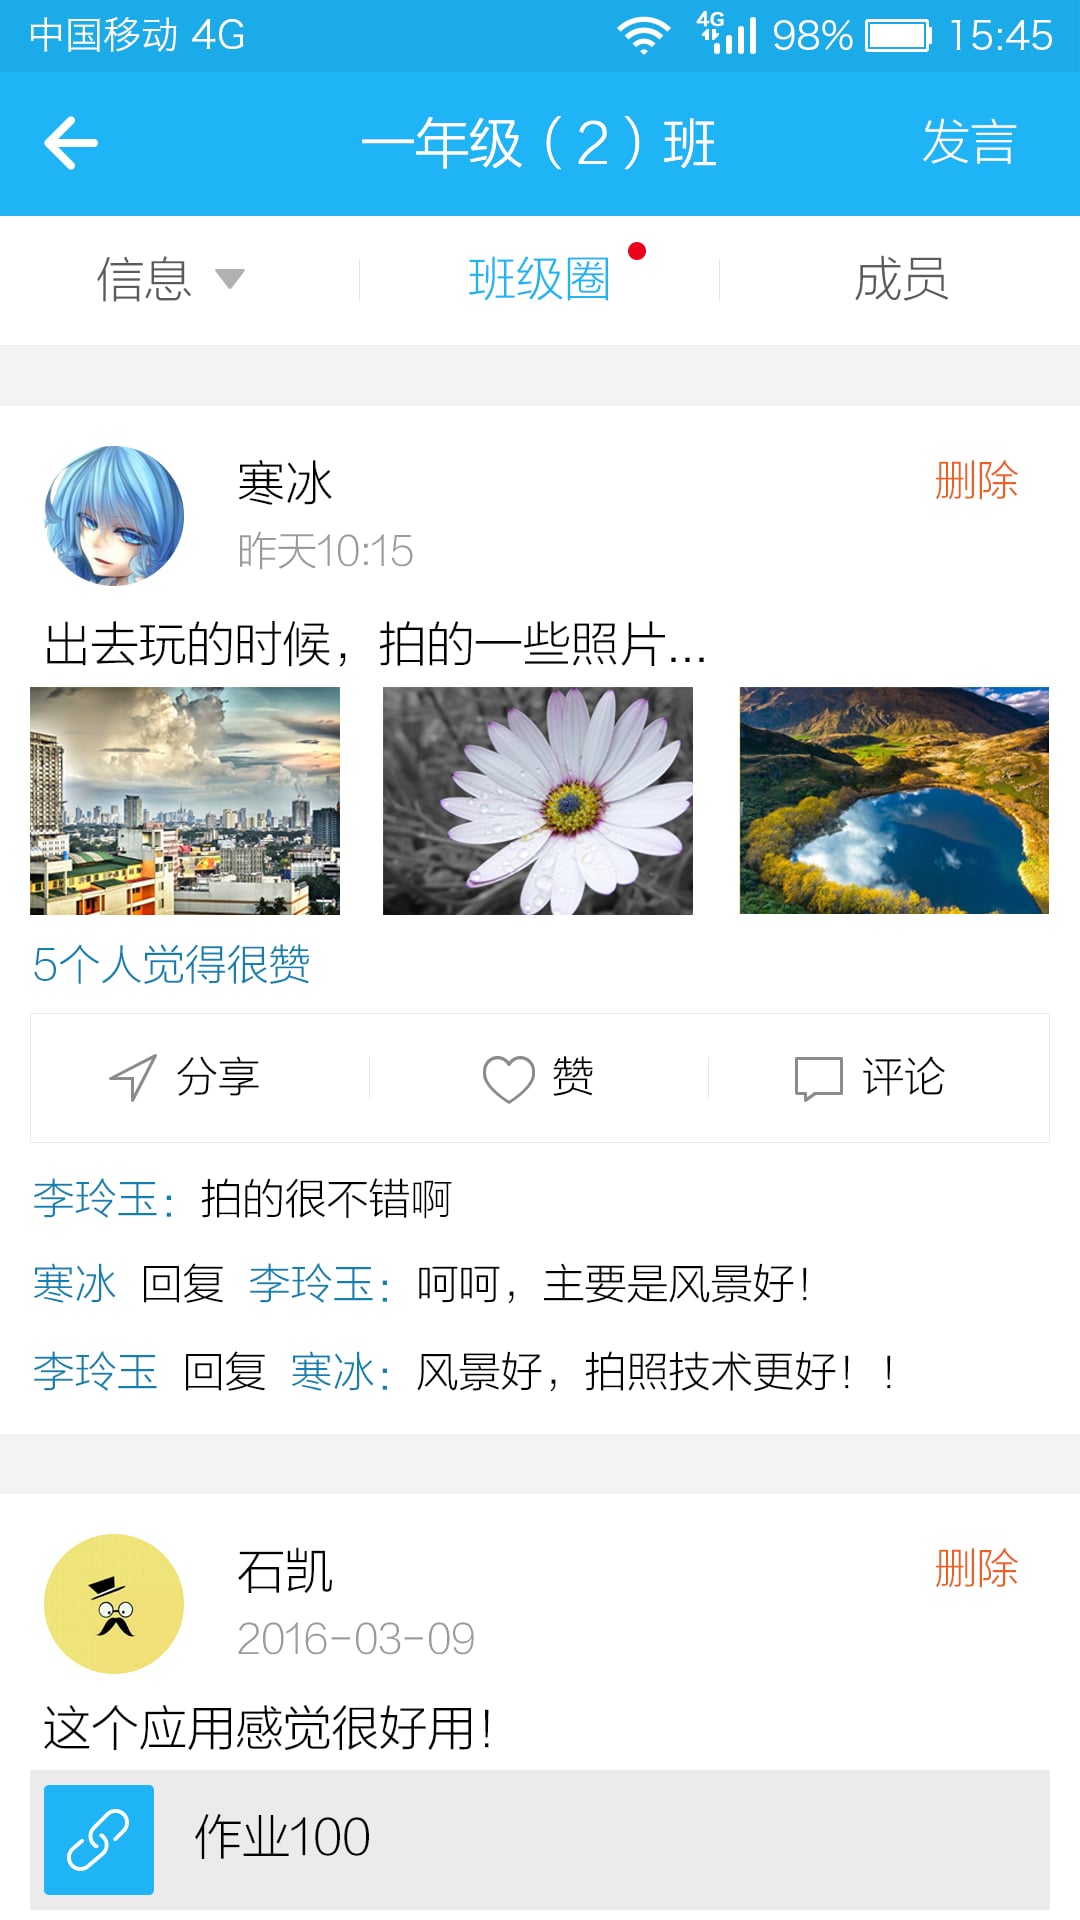 江苏校讯通客户端 v5.2.2 官方安卓版 0